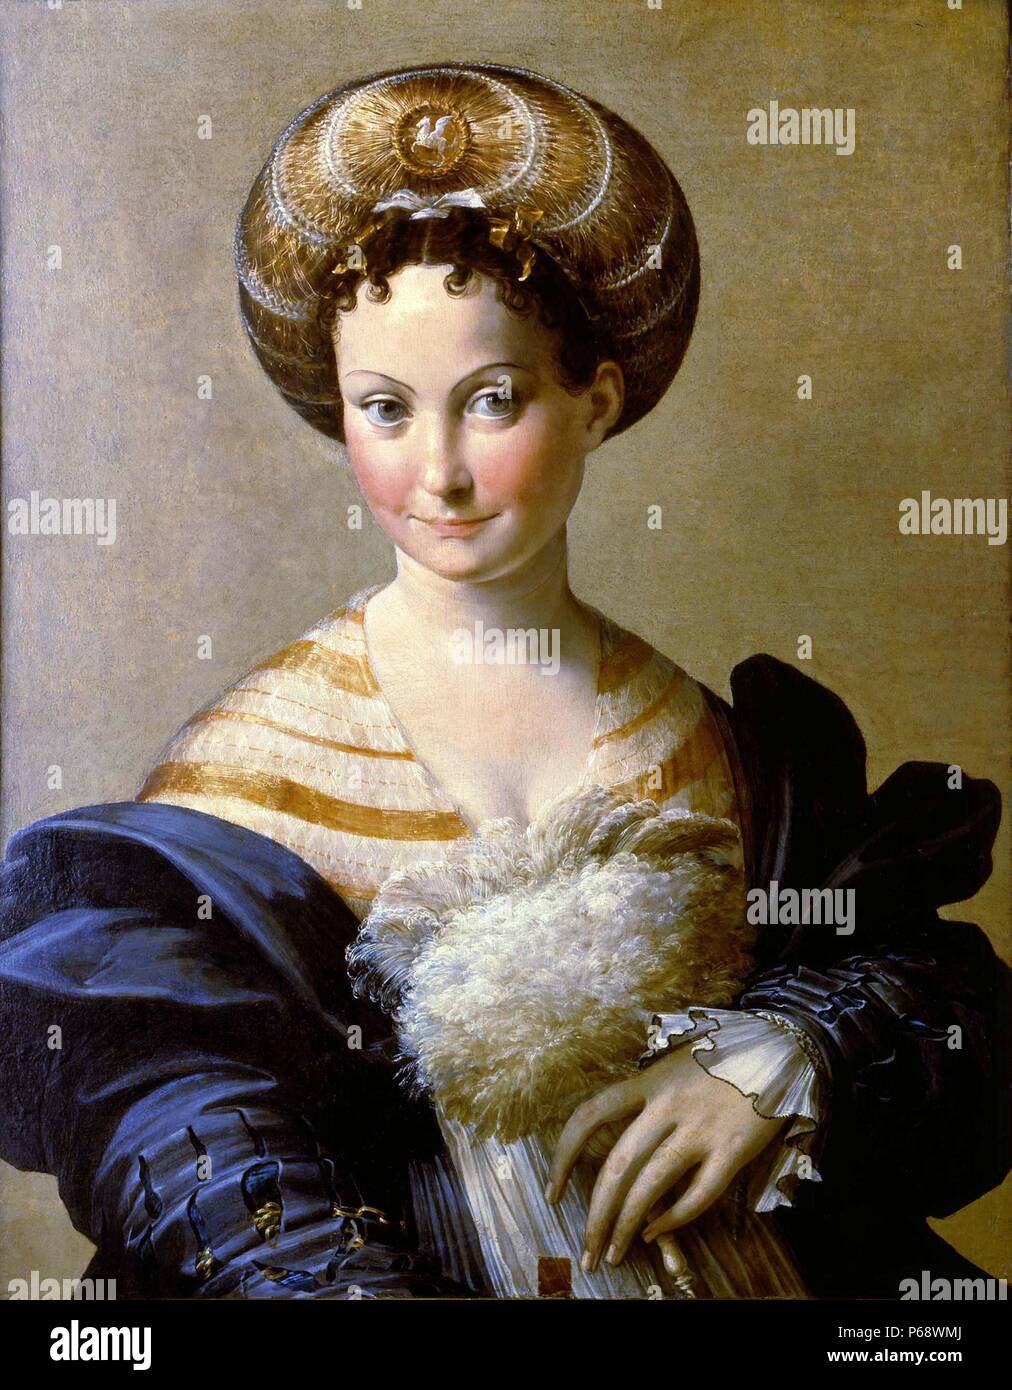 Türkische Slave (Porträt einer jungen Frau; Italienisch: Schiava turca) ist ein Gemälde des italienischen Manierismus artist Parmigianino, um 1533 ausgeführt. In der Galleria Nazionale di Parma untergebracht ist, Norditalien. Stockfoto